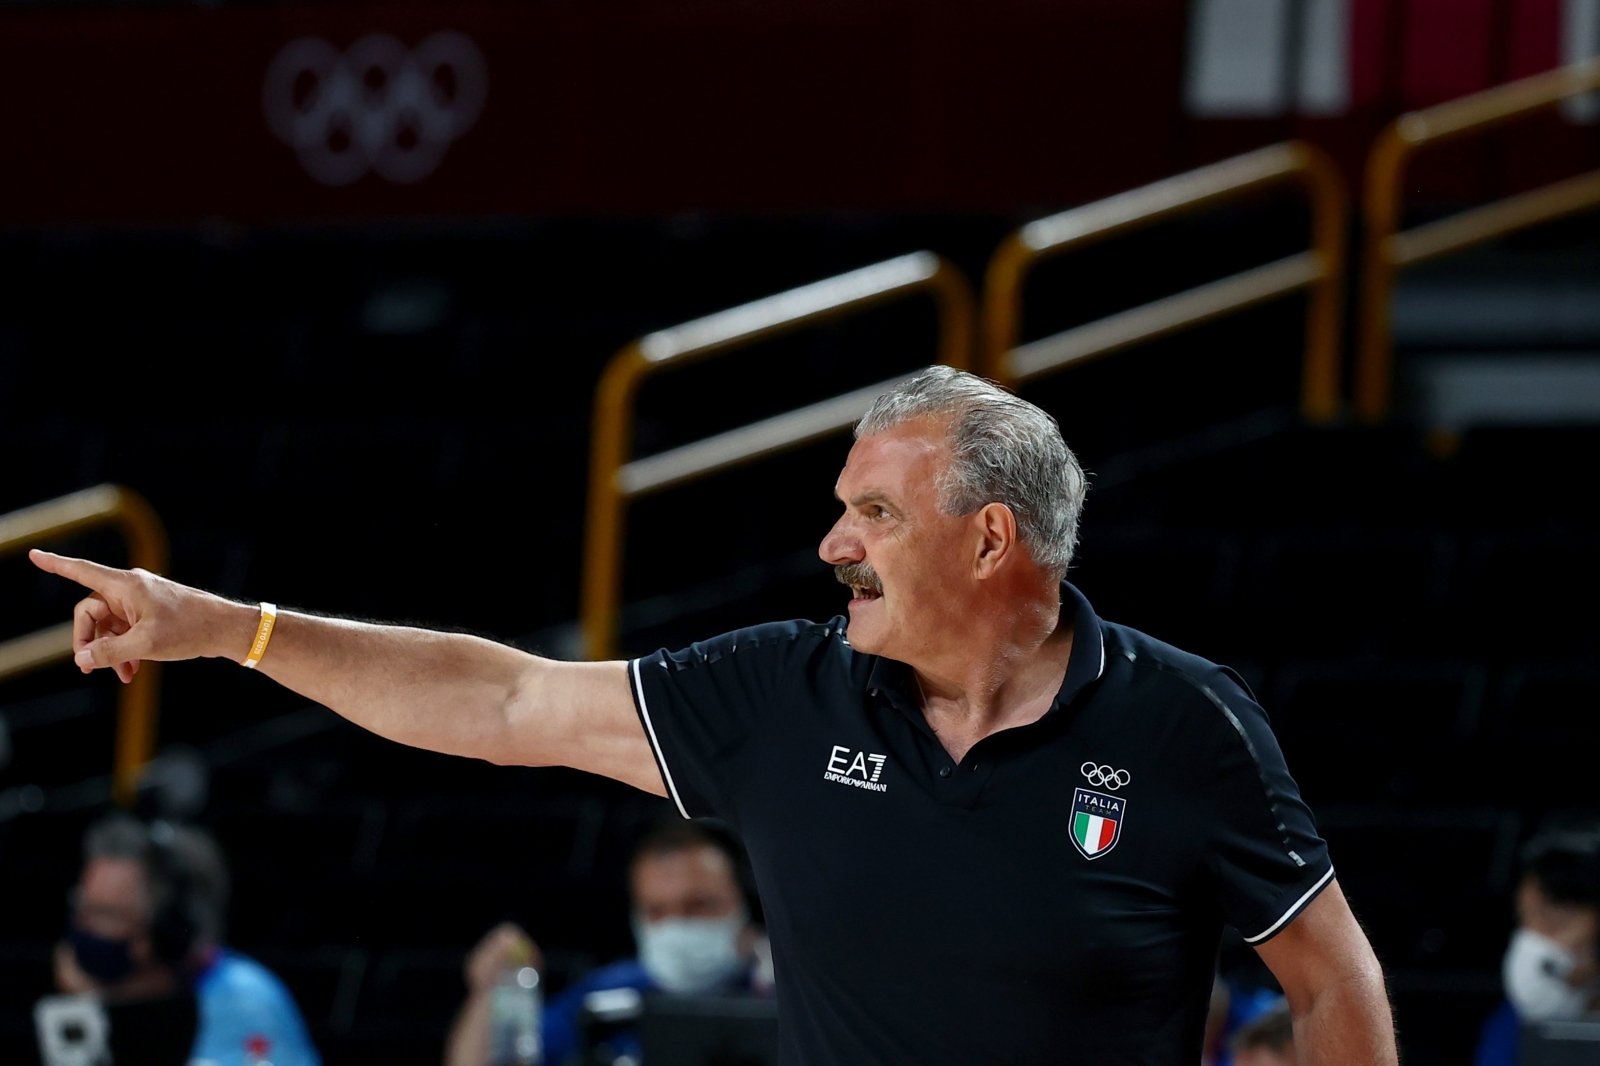 L’allenatore lascia la nazionale italiana, il famoso assistente di Messina prende il timone